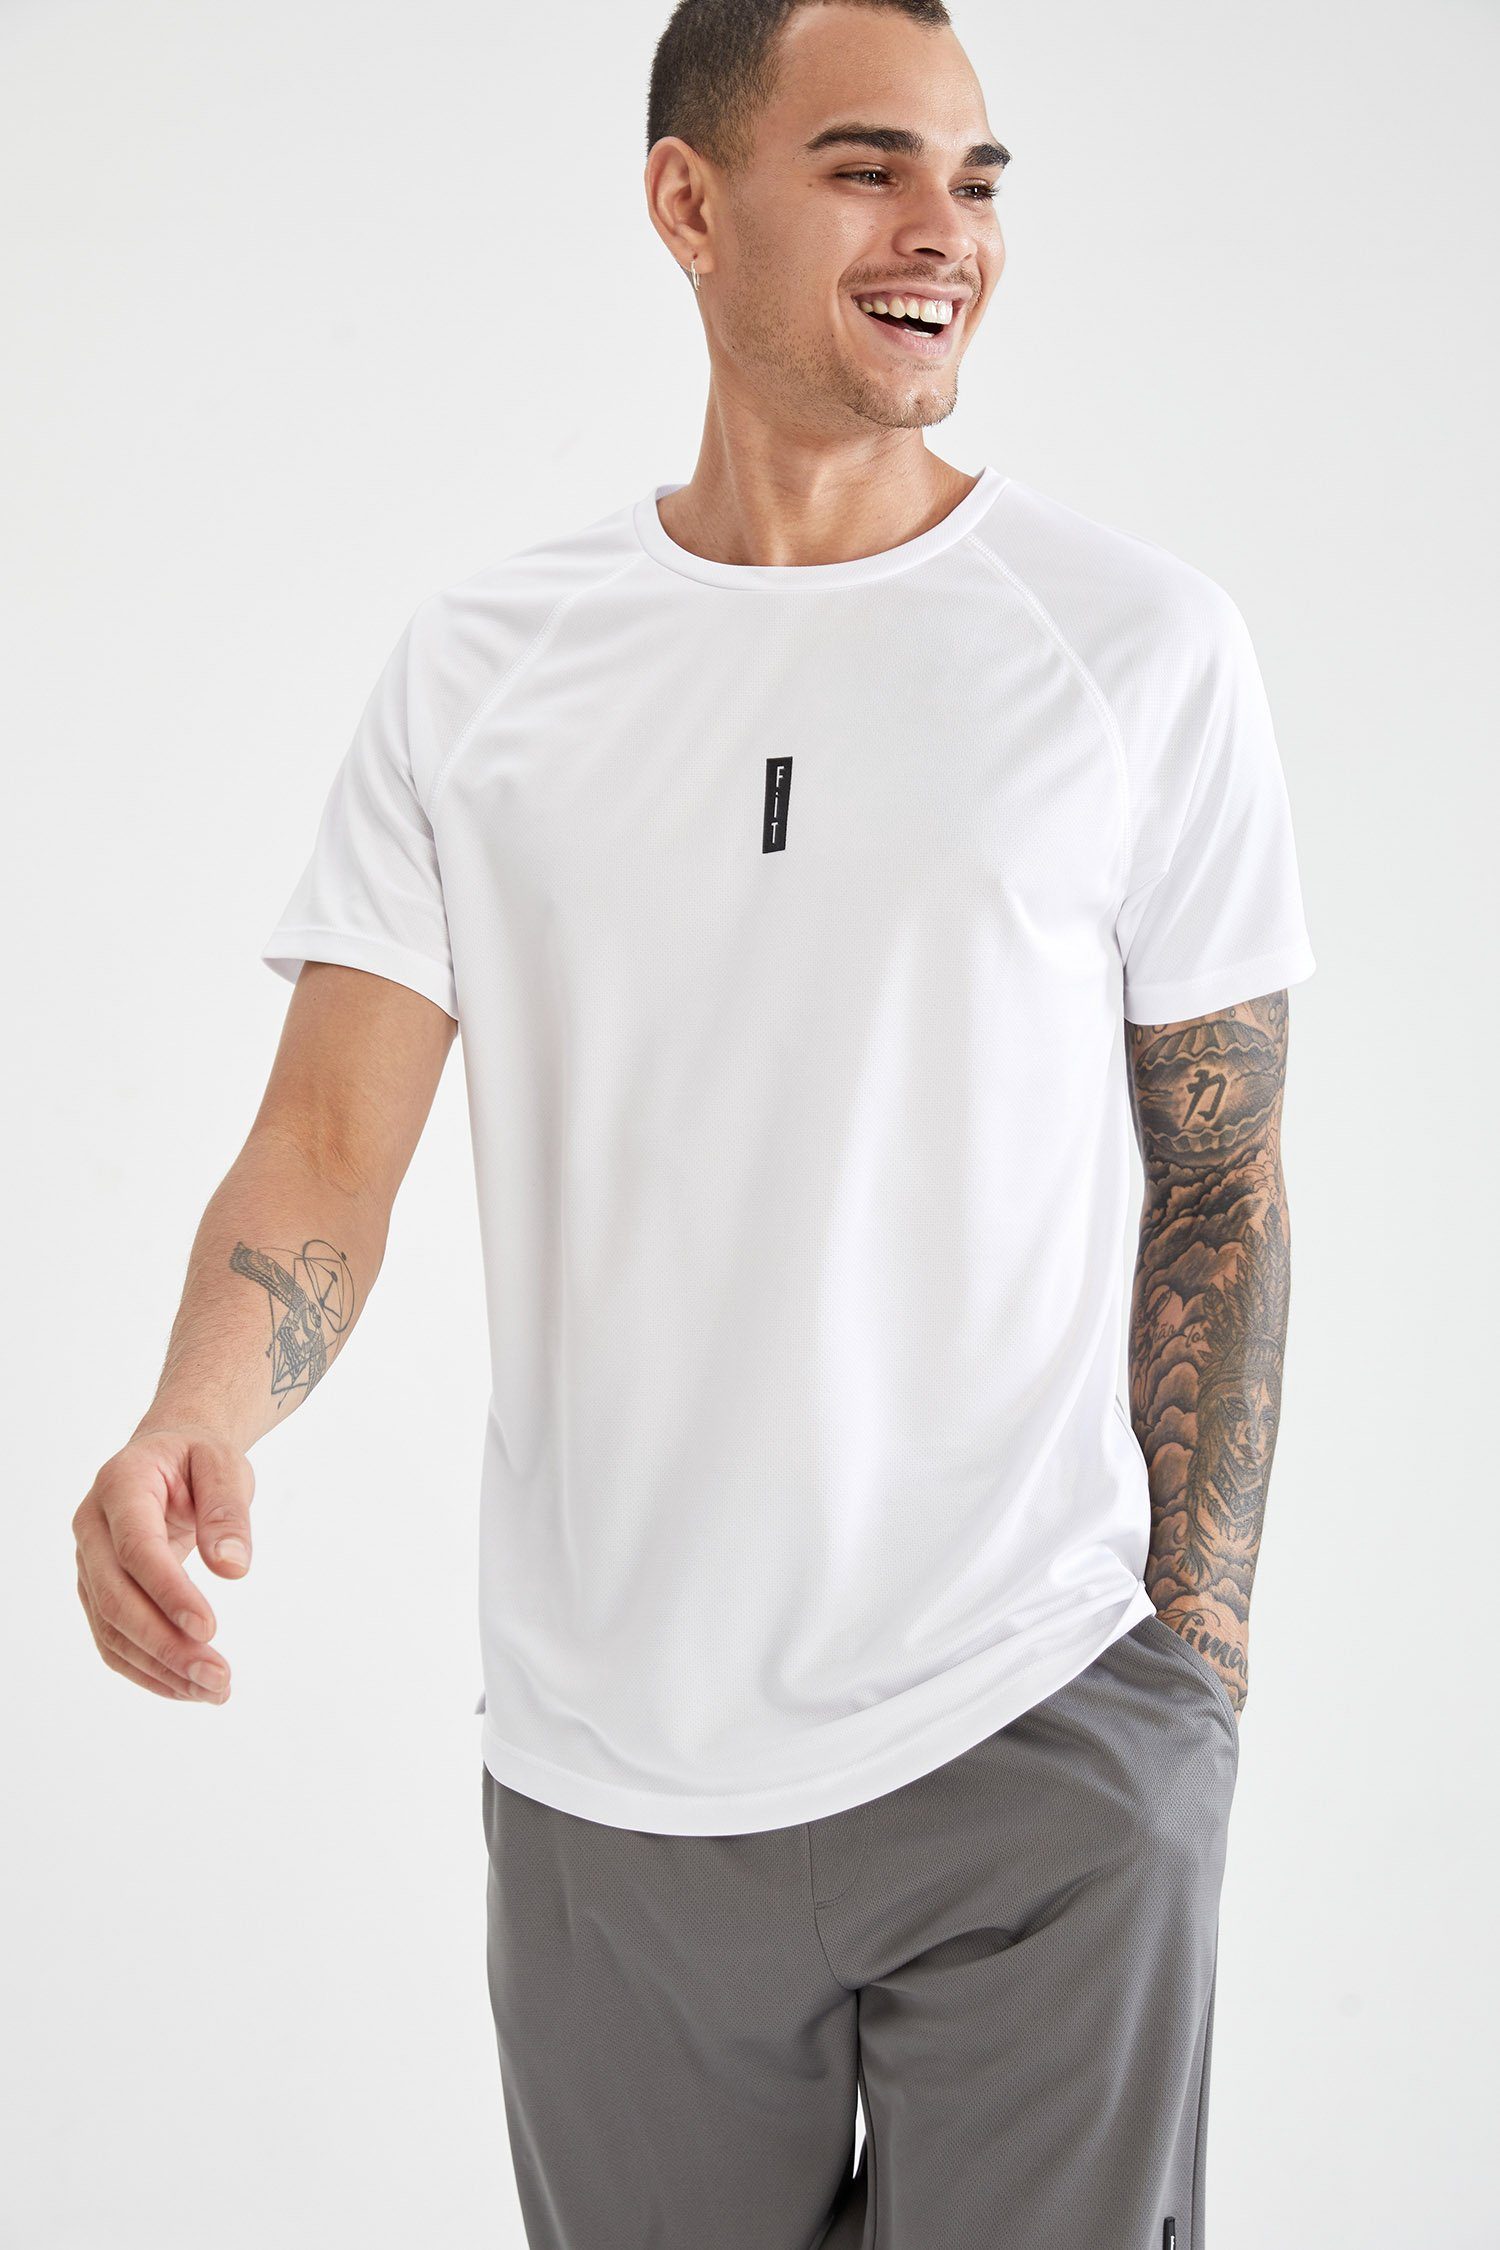 Weiß T-Shirt DeFacto FIT Herren Sport SLIM T-Shirt